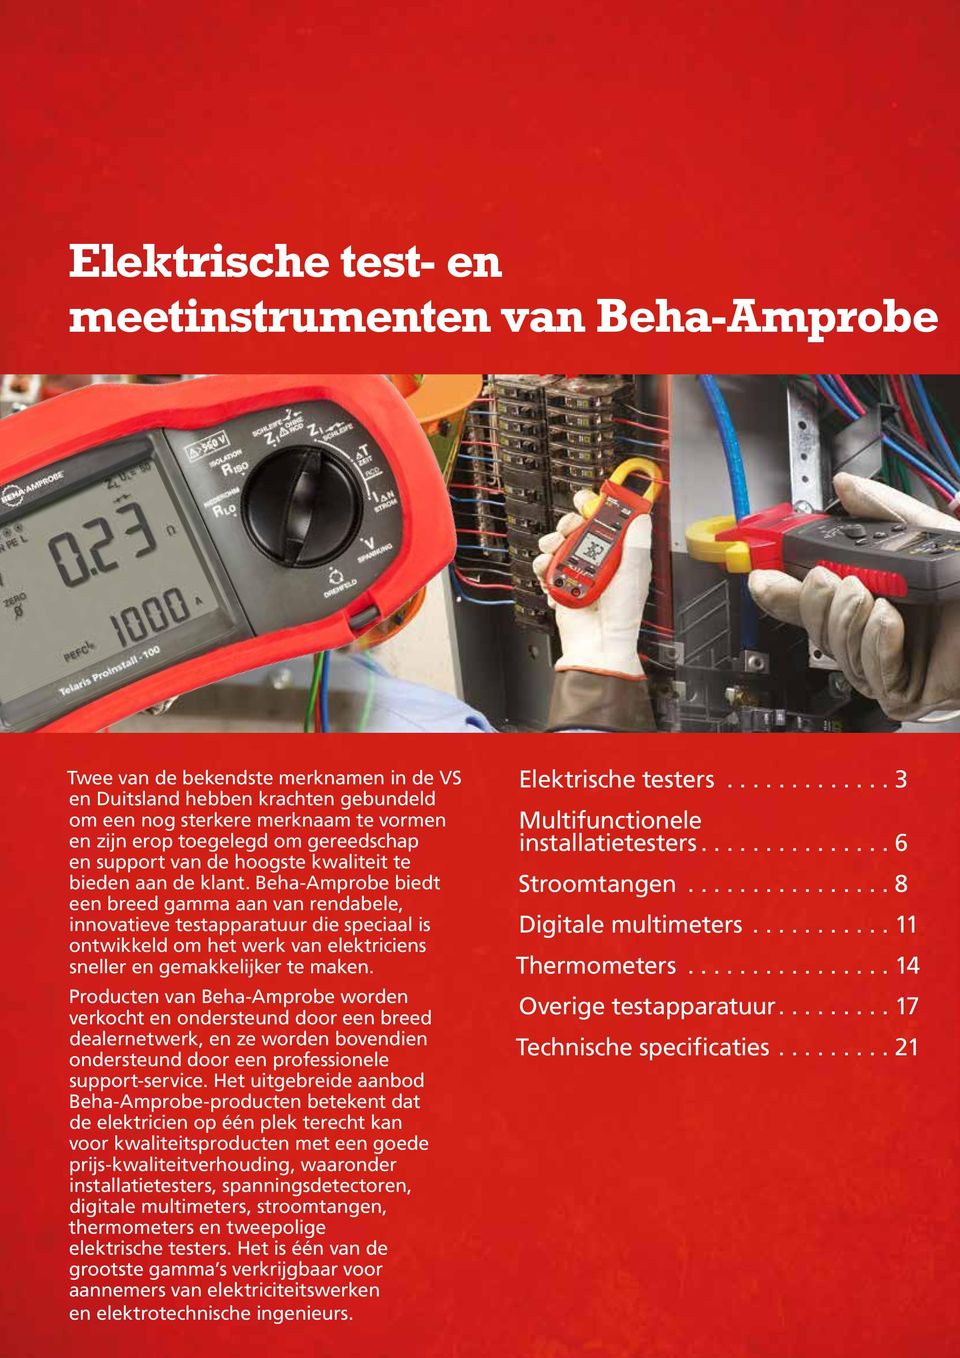 Beha-Amprobe biedt een breed gamma aan van rendabele, innovatieve testapparatuur die speciaal is ontwikkeld om het werk van elektriciens sneller en gemakkelijker te maken.